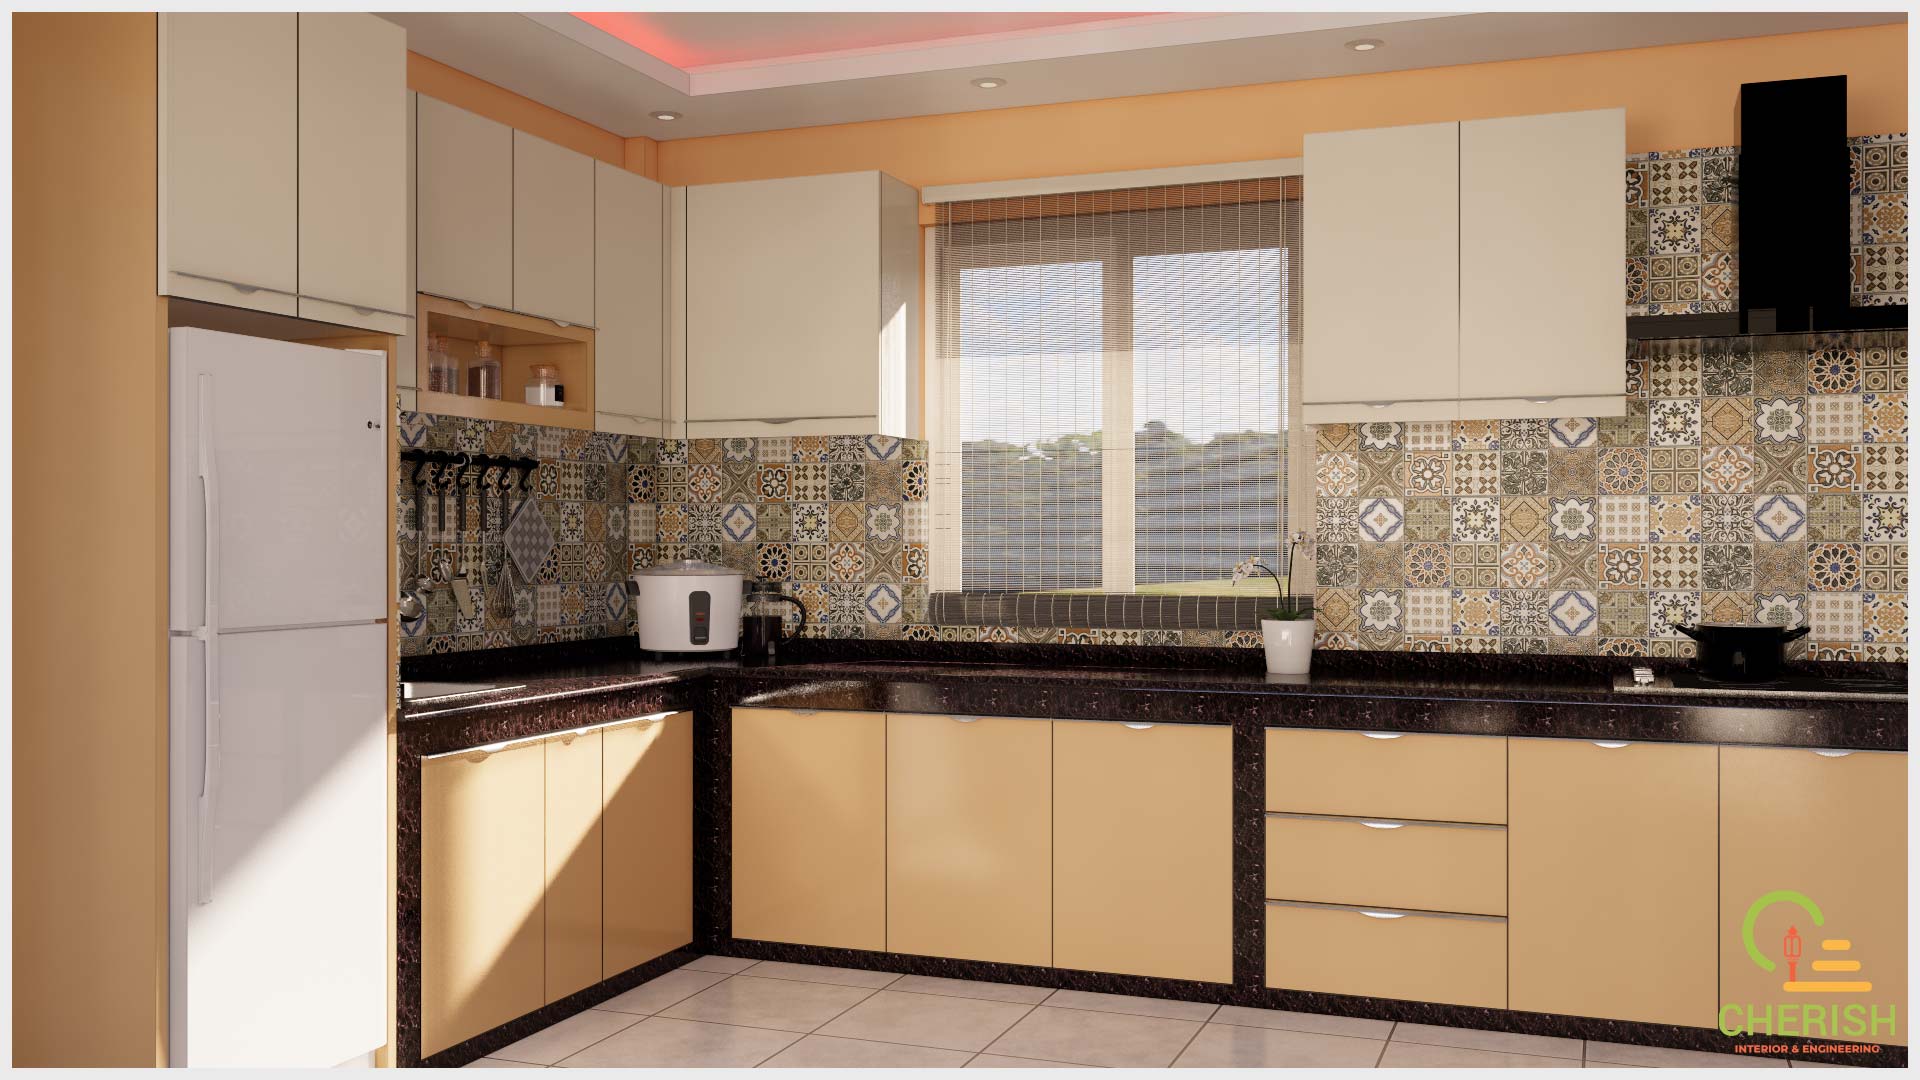 kitchen interior design nepal